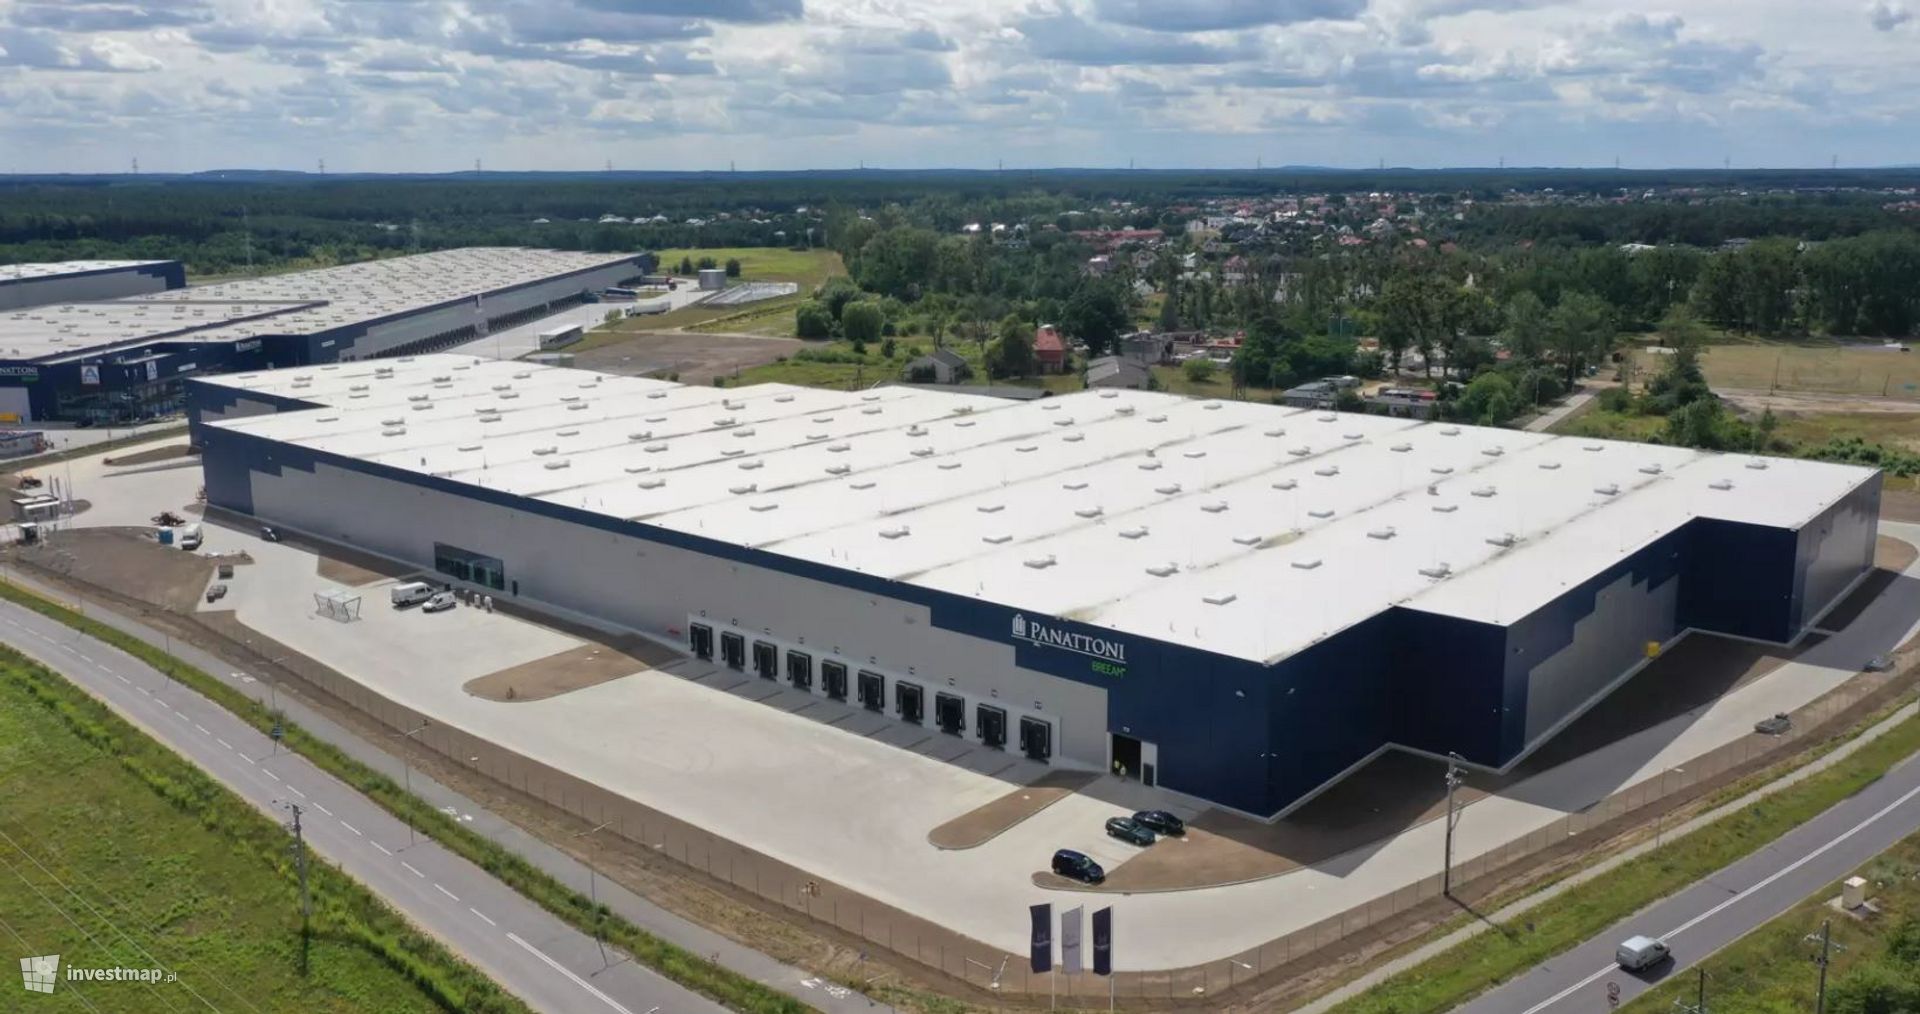 Panattoni z kolejnym ogromnym finansowaniem. Największy park przemysłowy w Bydgoszczy sfinansowany kredytem od BNP Paribas